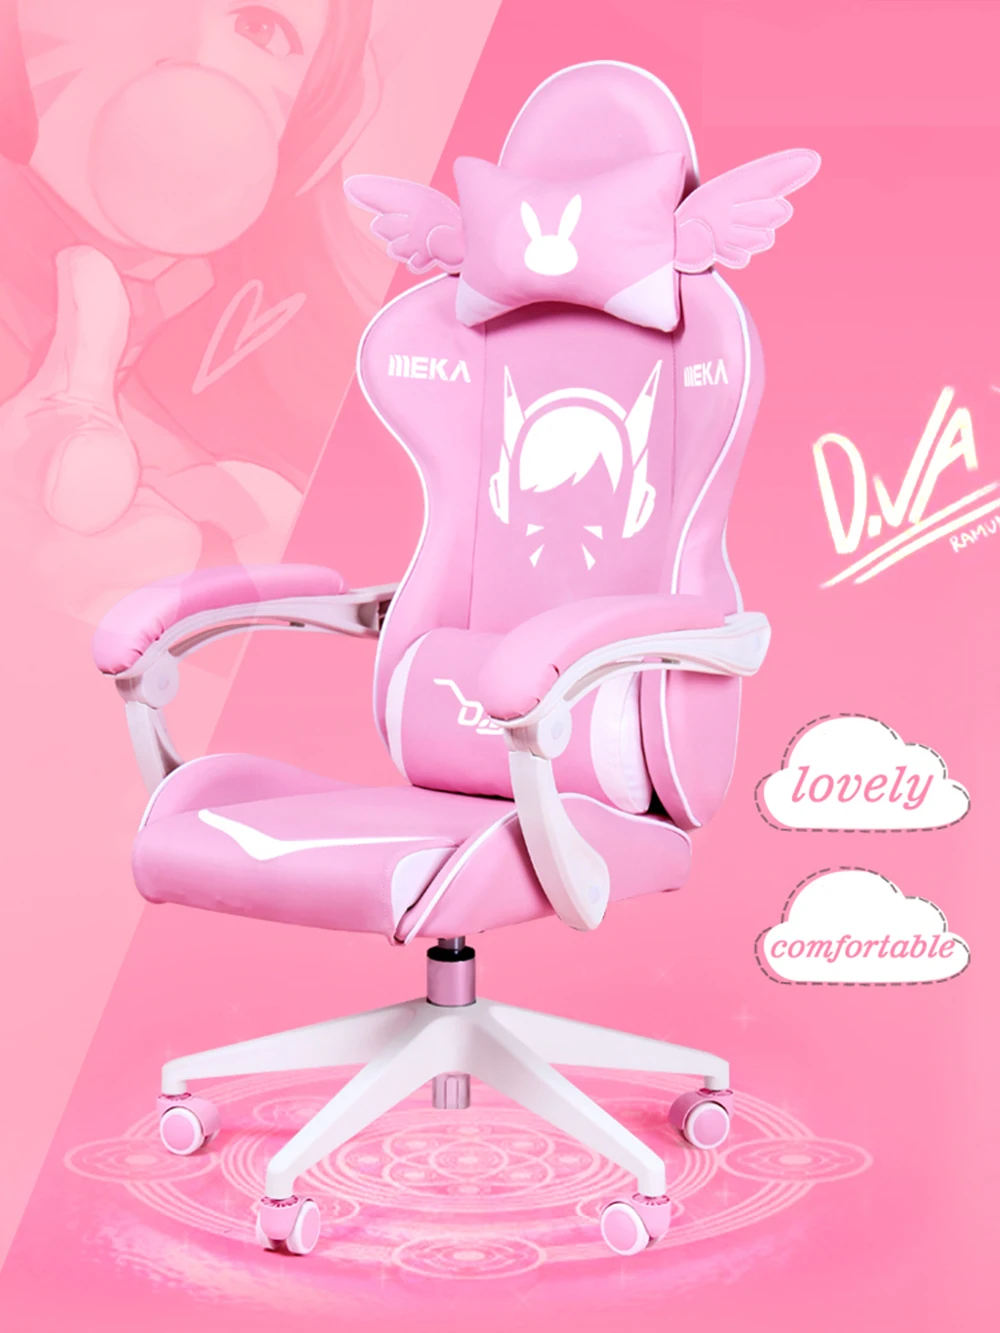 Красивое розовое кресло игровое силловое для девушек живых компьютерное цветное